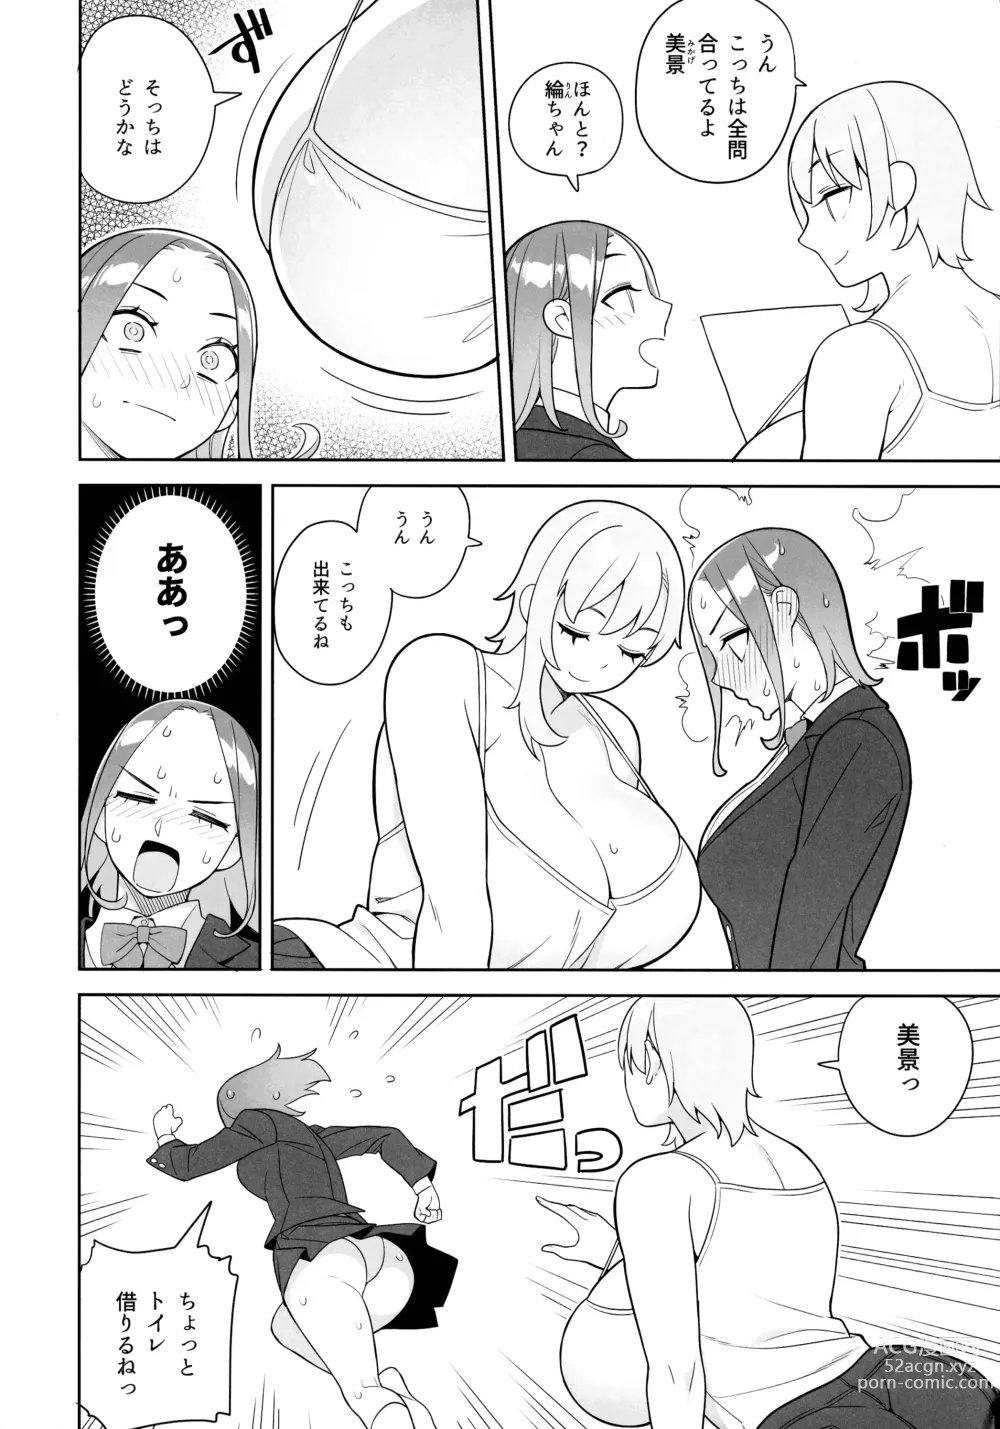 Page 4 of doujinshi Tomodachi to Sono Haha Oya ni Semarareru Hanashi